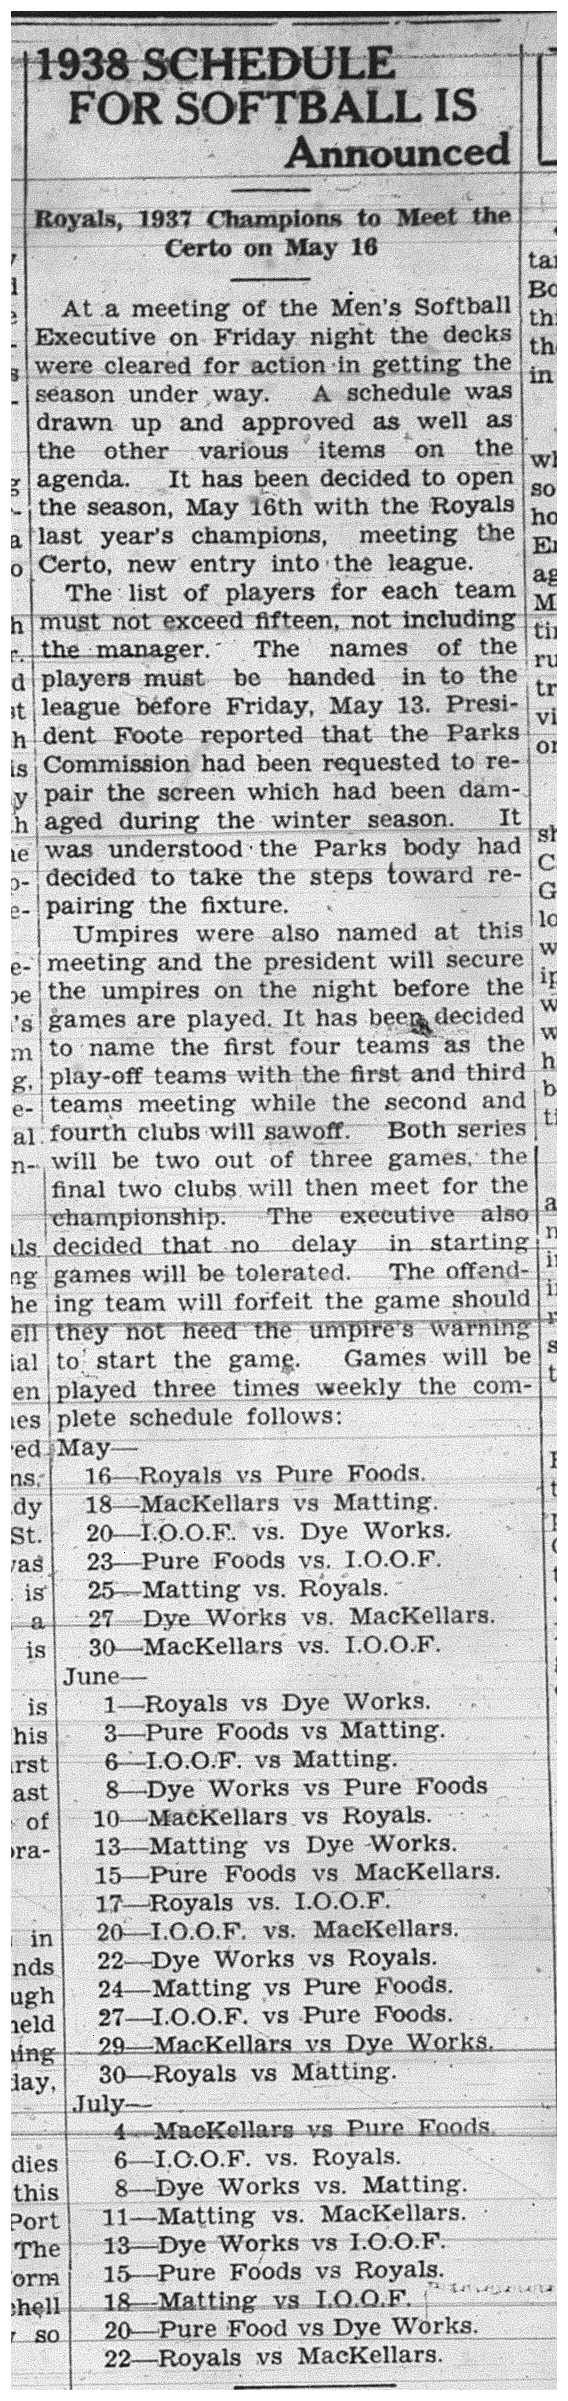 1938-05-12 Softball -Men's League schedule